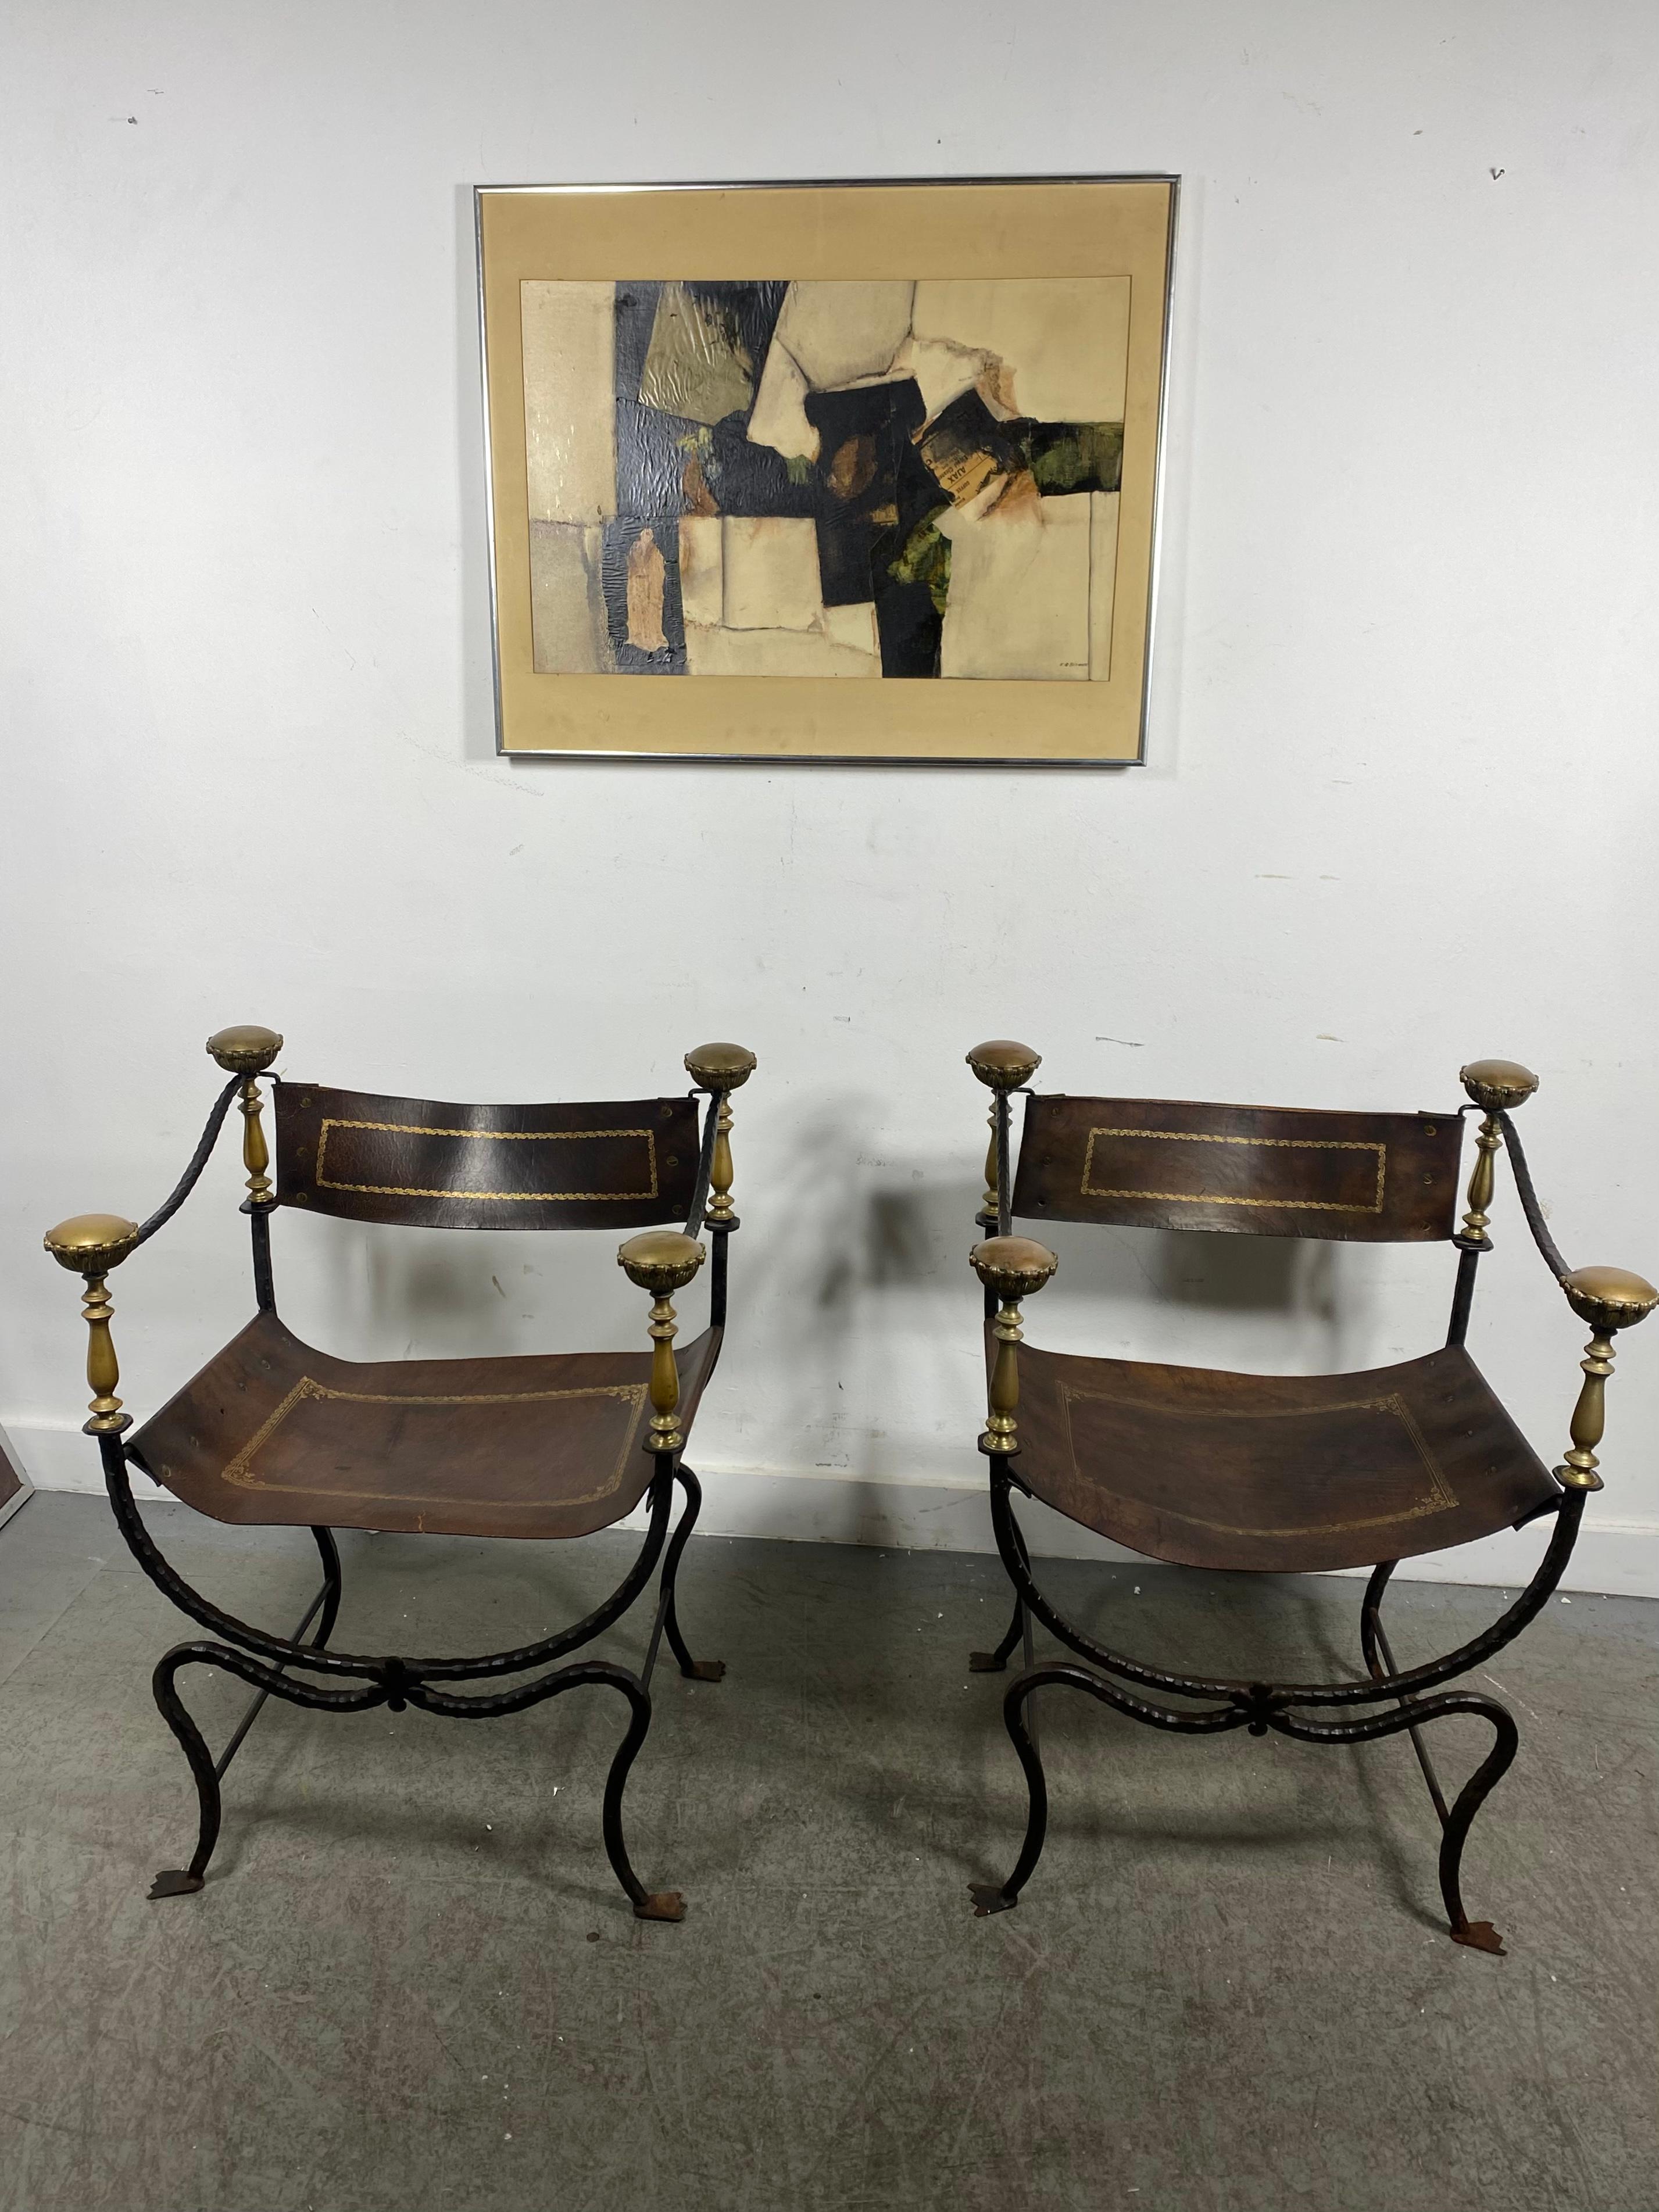 Paire de chaises Savonarola italiennes du 20ème siècle en fer, bronze et cuir,, sièges et dossiers en cuir d'origine, déchirure mineure sur l'une des chaises (voir photo), quelques œillets manquants, châssis en fer présentant une légère rouille,